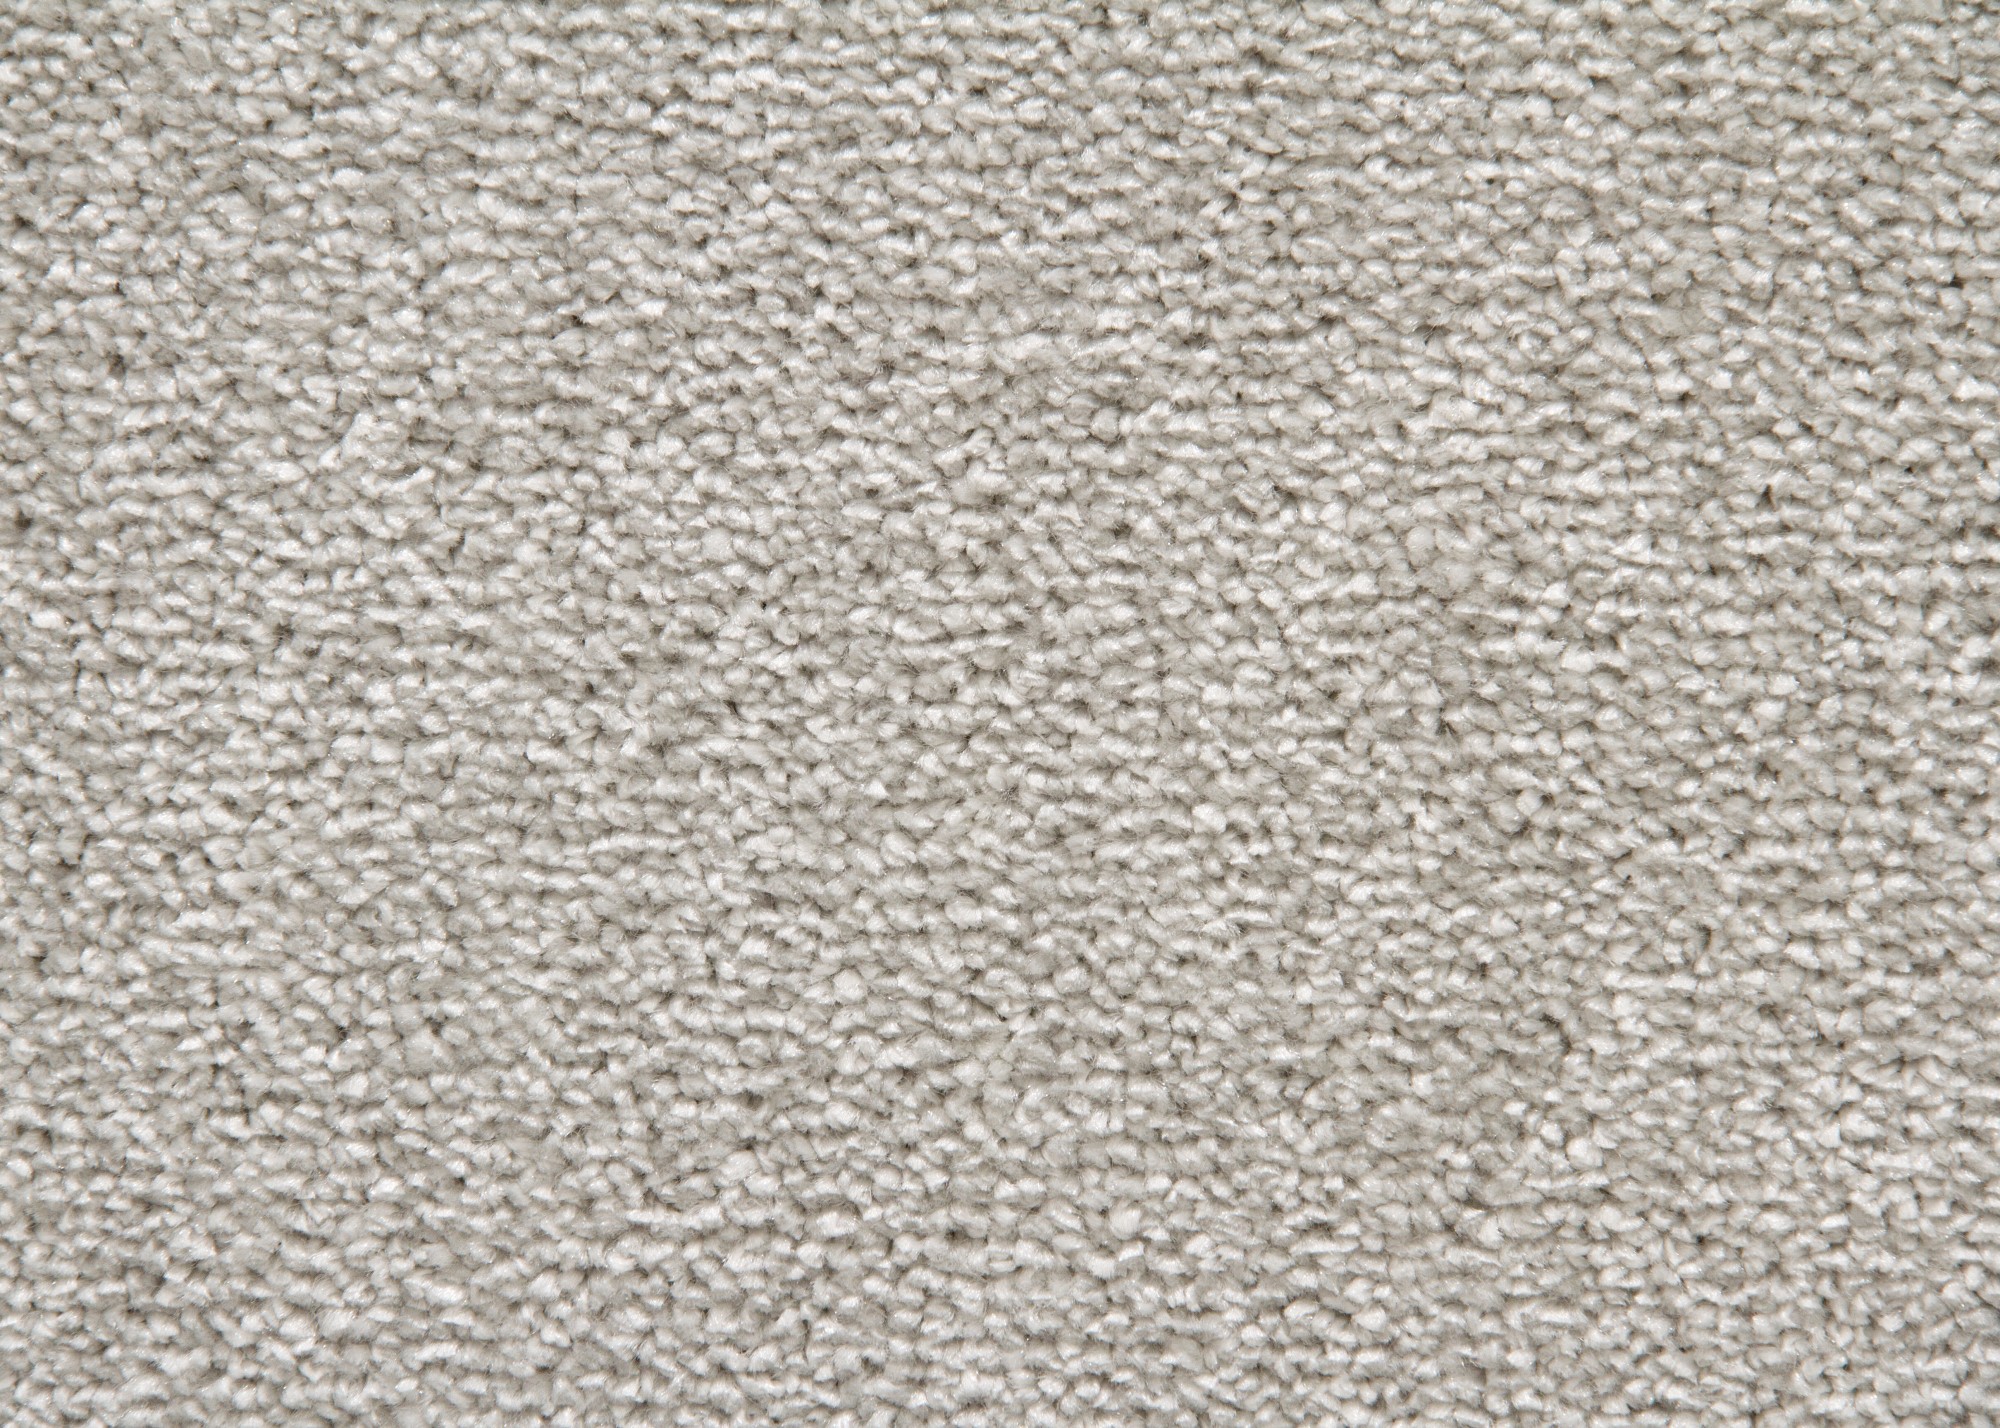 Designer Teppich Modern Margate Wohnzimmer grau beige | eBay